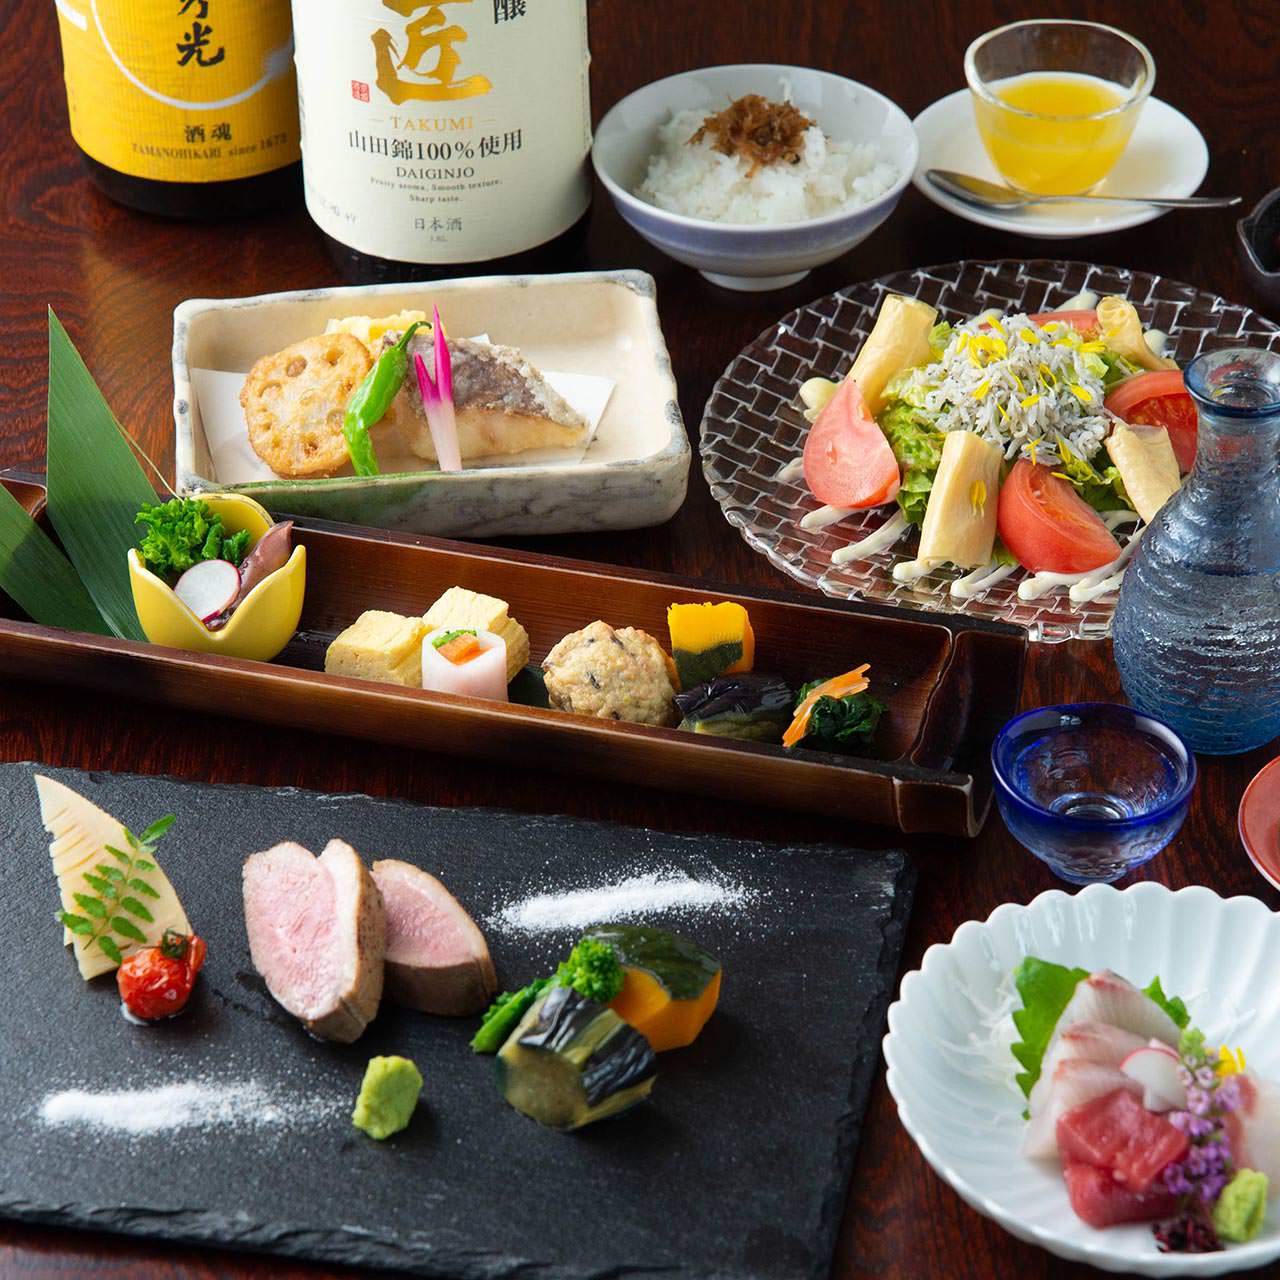 絶品の鴨料理と京都伏見の日本酒をお楽しみいただけるコース。